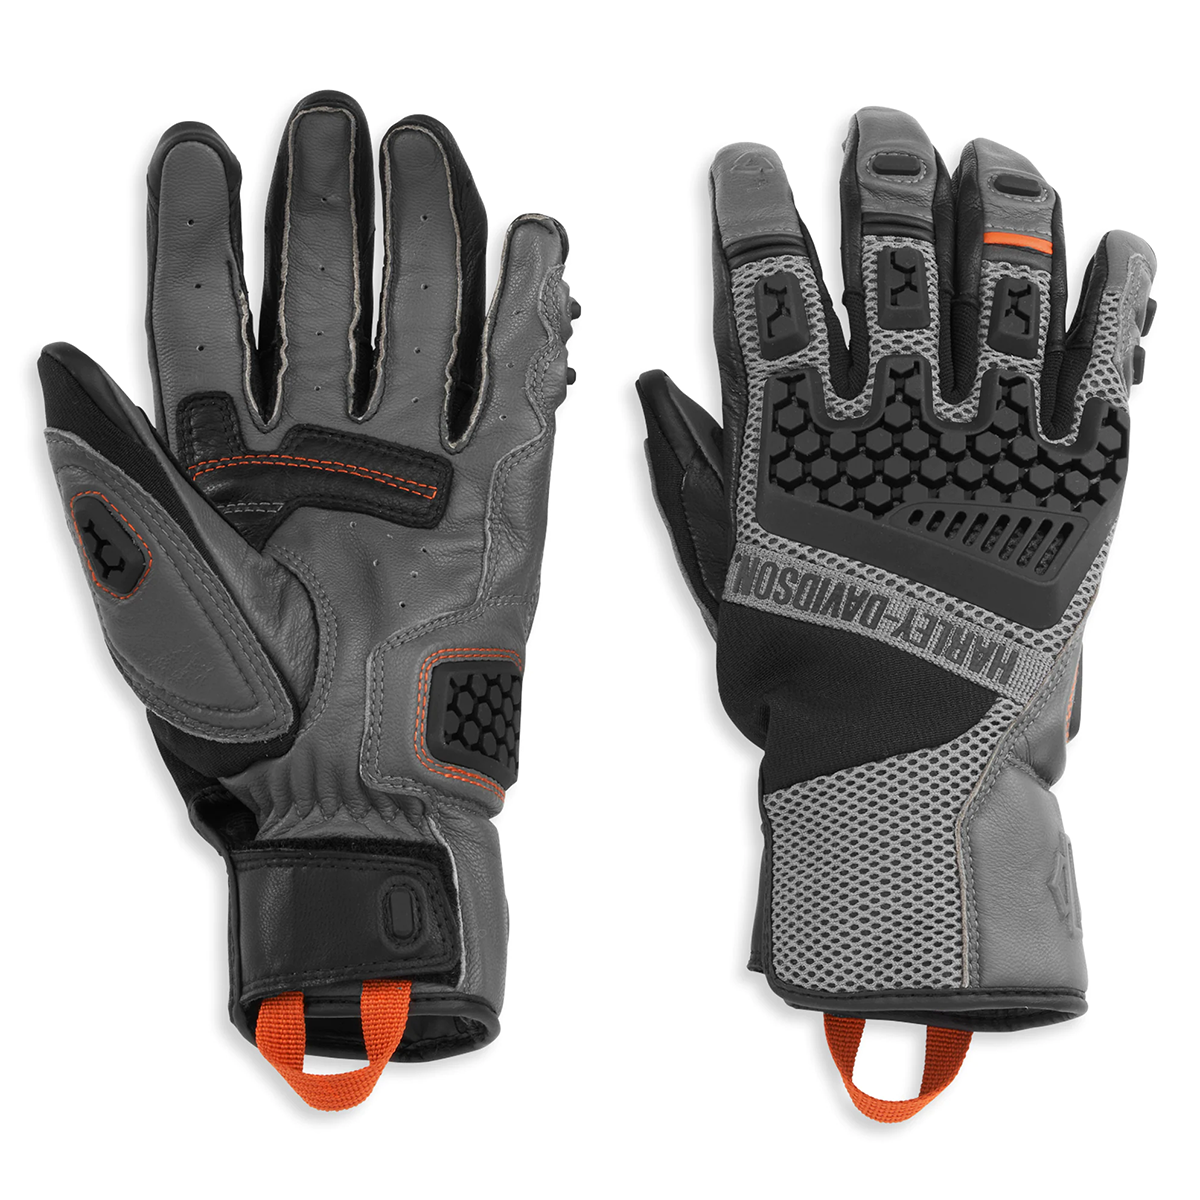 Harley-Davidson Men's Grit Adventure Gloves